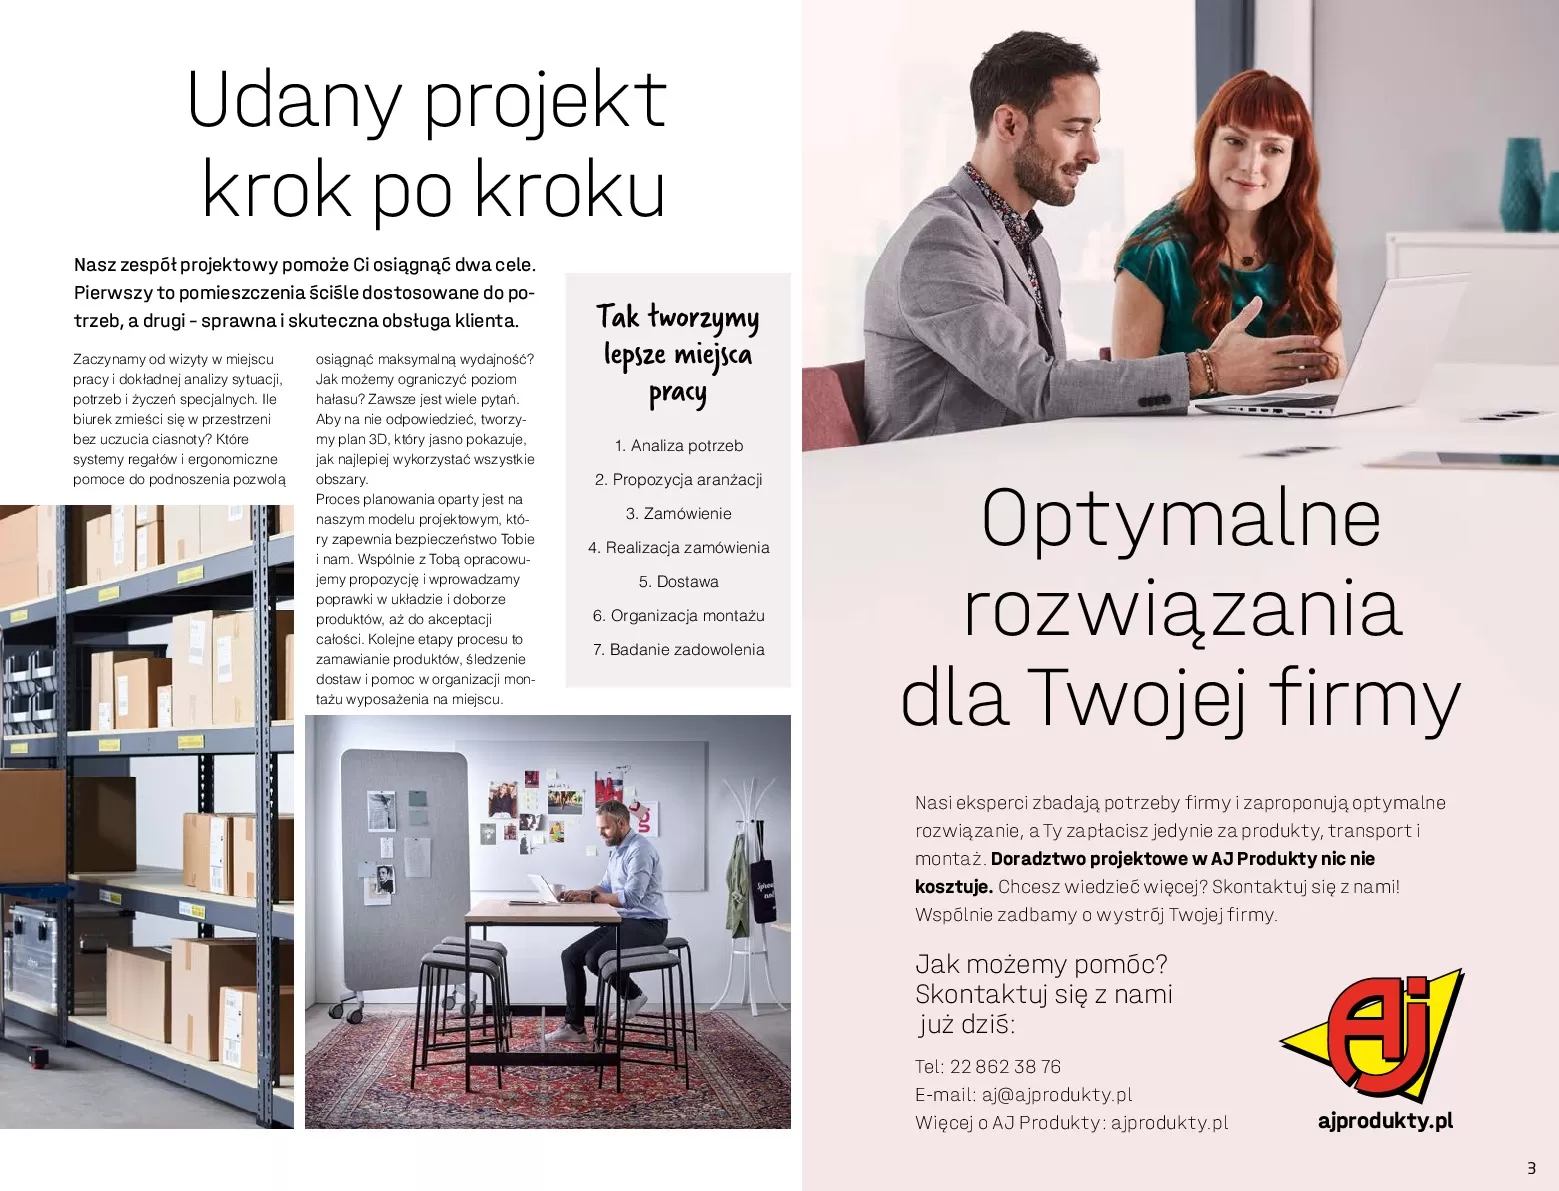 Gazetka promocyjna AJ Produkty - Warsztat, Przemysł, Magazyna - ważna 01.01 do 31.12.2020 - strona 3